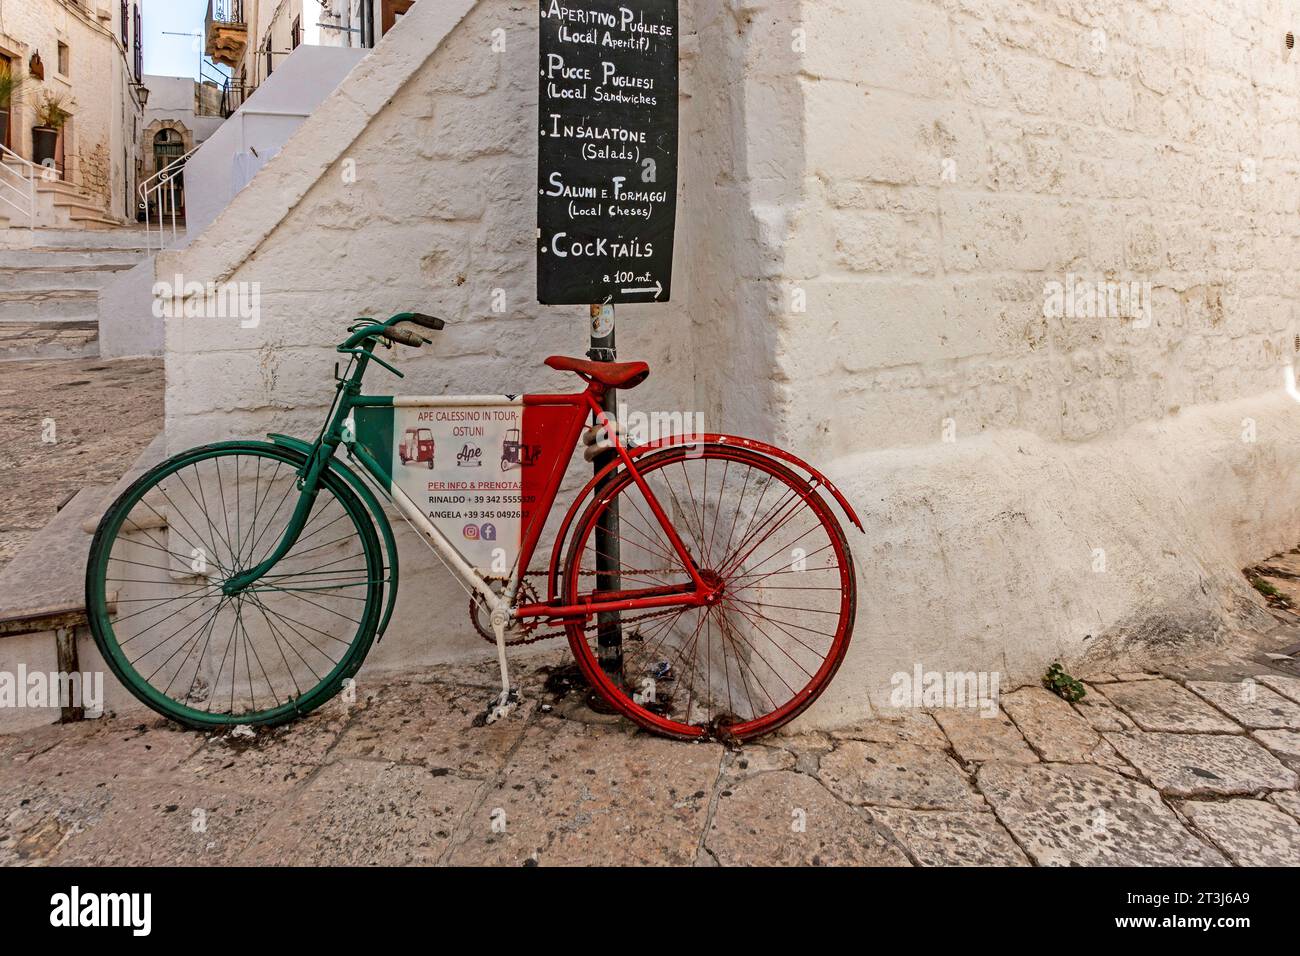 Une scène colorée à Ostuni, en Italie, une bicyclette portant une publicité pour des tours à moteur TucTuc sous un panneau pour un café local. Banque D'Images